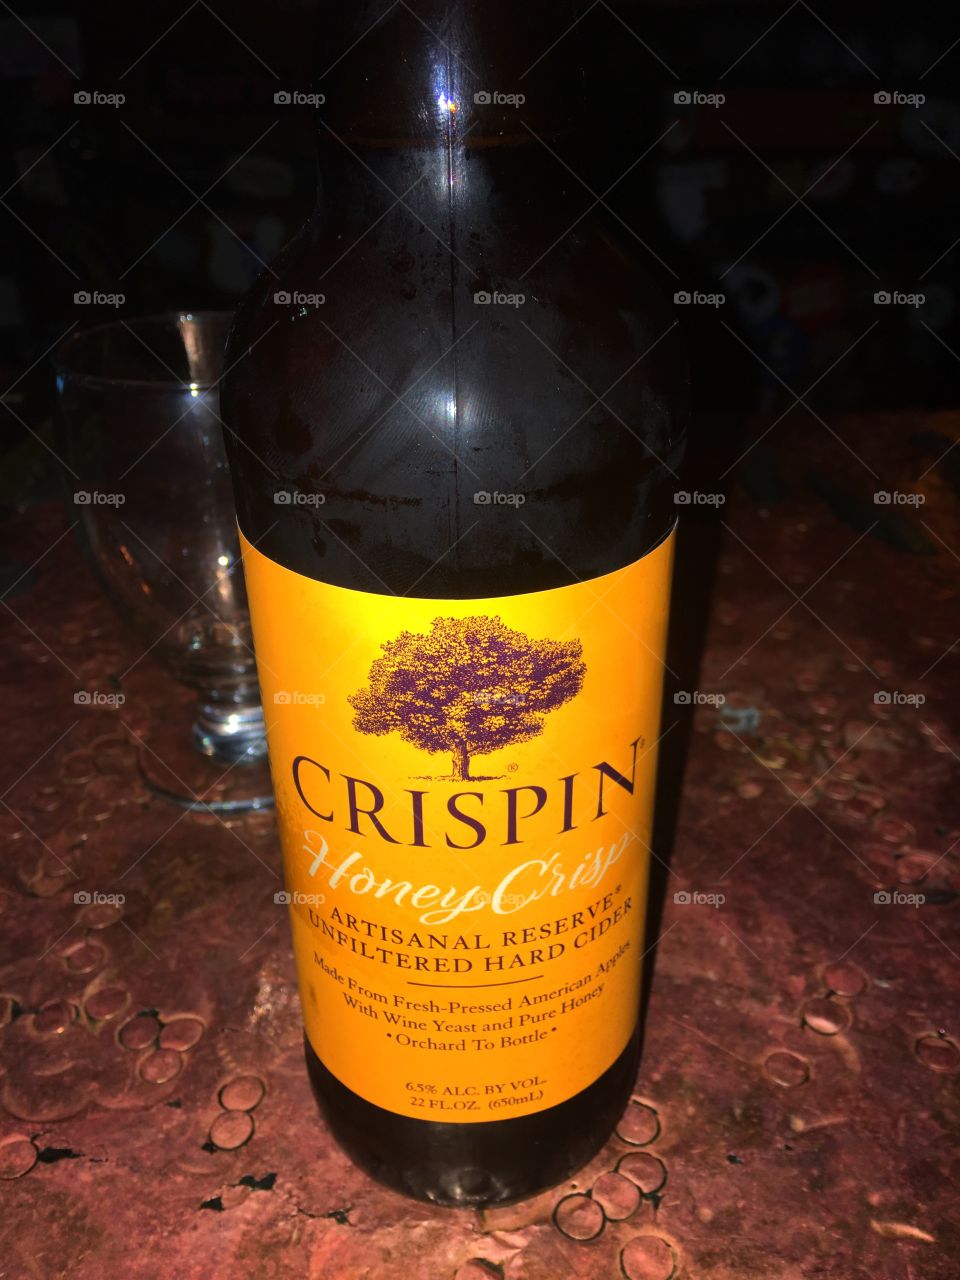 Mr. Goodbar
Crispin cider